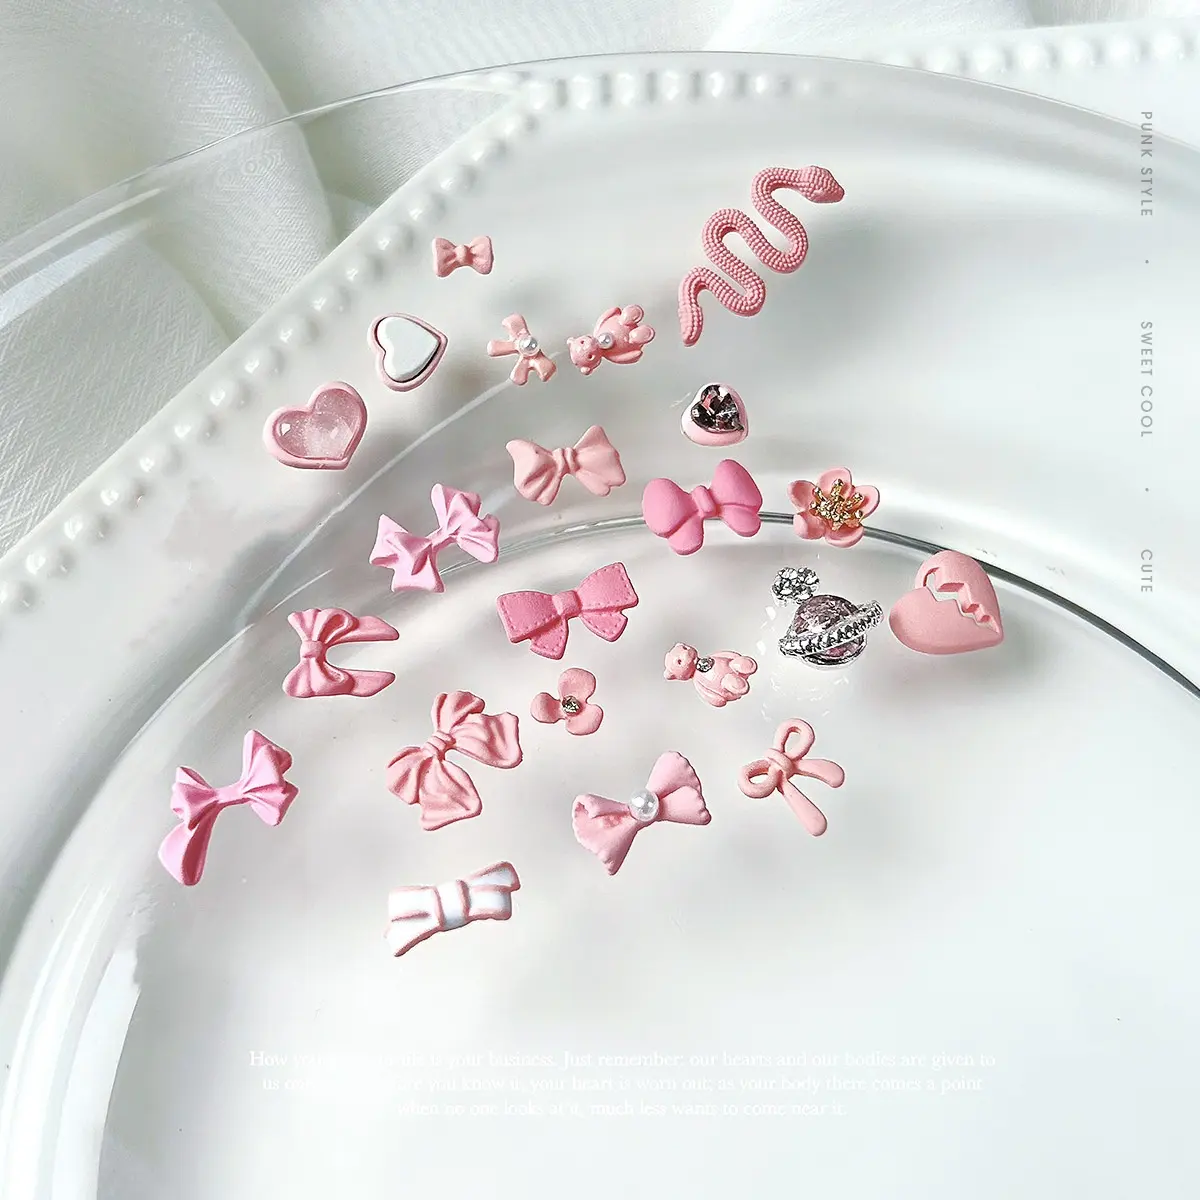 Diamantes de imitación kawaii de color caramelo, abalorios para uñas con lazo rosa, suministros para uñas, decoración